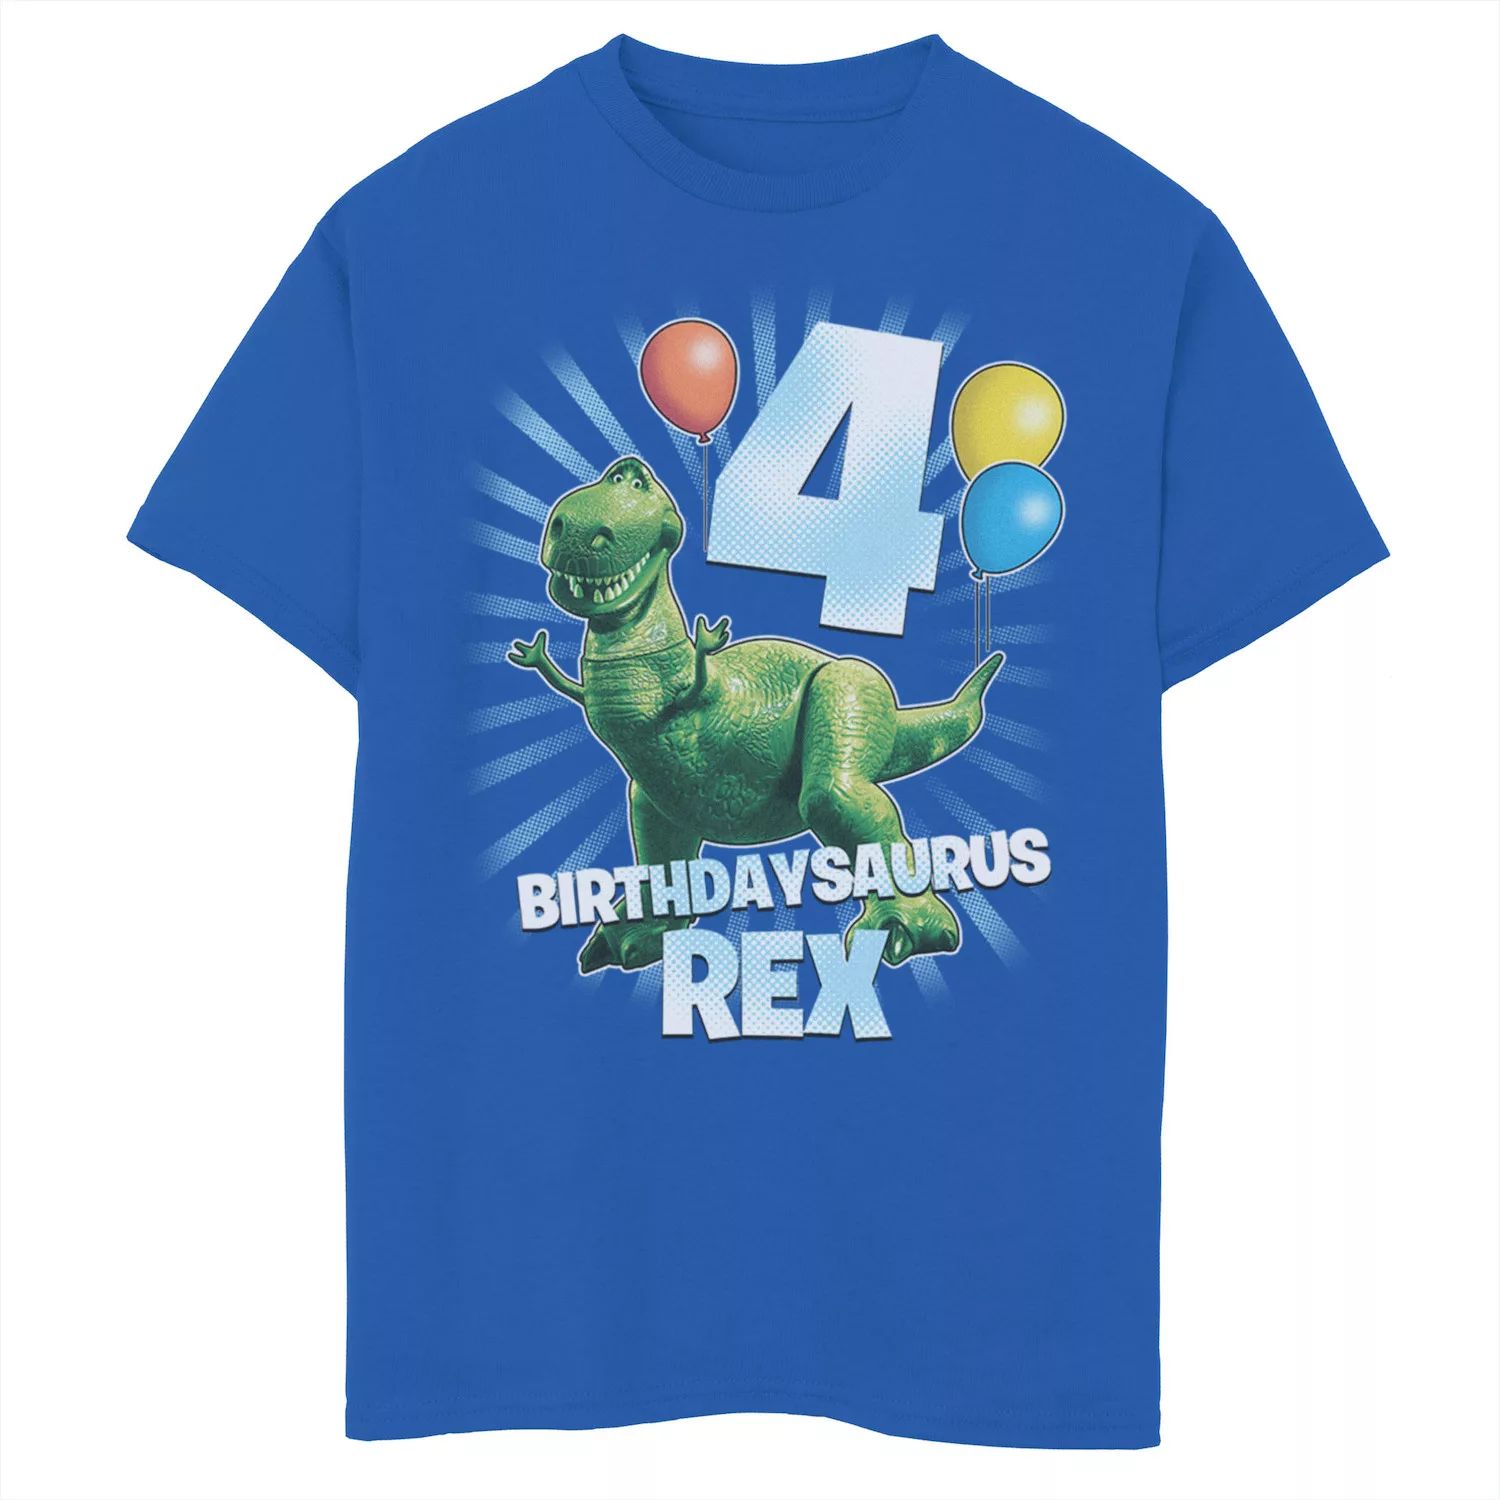 Футболка с рисунком «История игрушек» Disney/Pixar для мальчиков 8–20 лет рождения «Saurus Rex» на 4-й день рождения Disney / Pixar футболка forky с рисунком на 3 й день рождения для мальчиков 8–20 лет disney pixar история игрушек 4 disney pixar